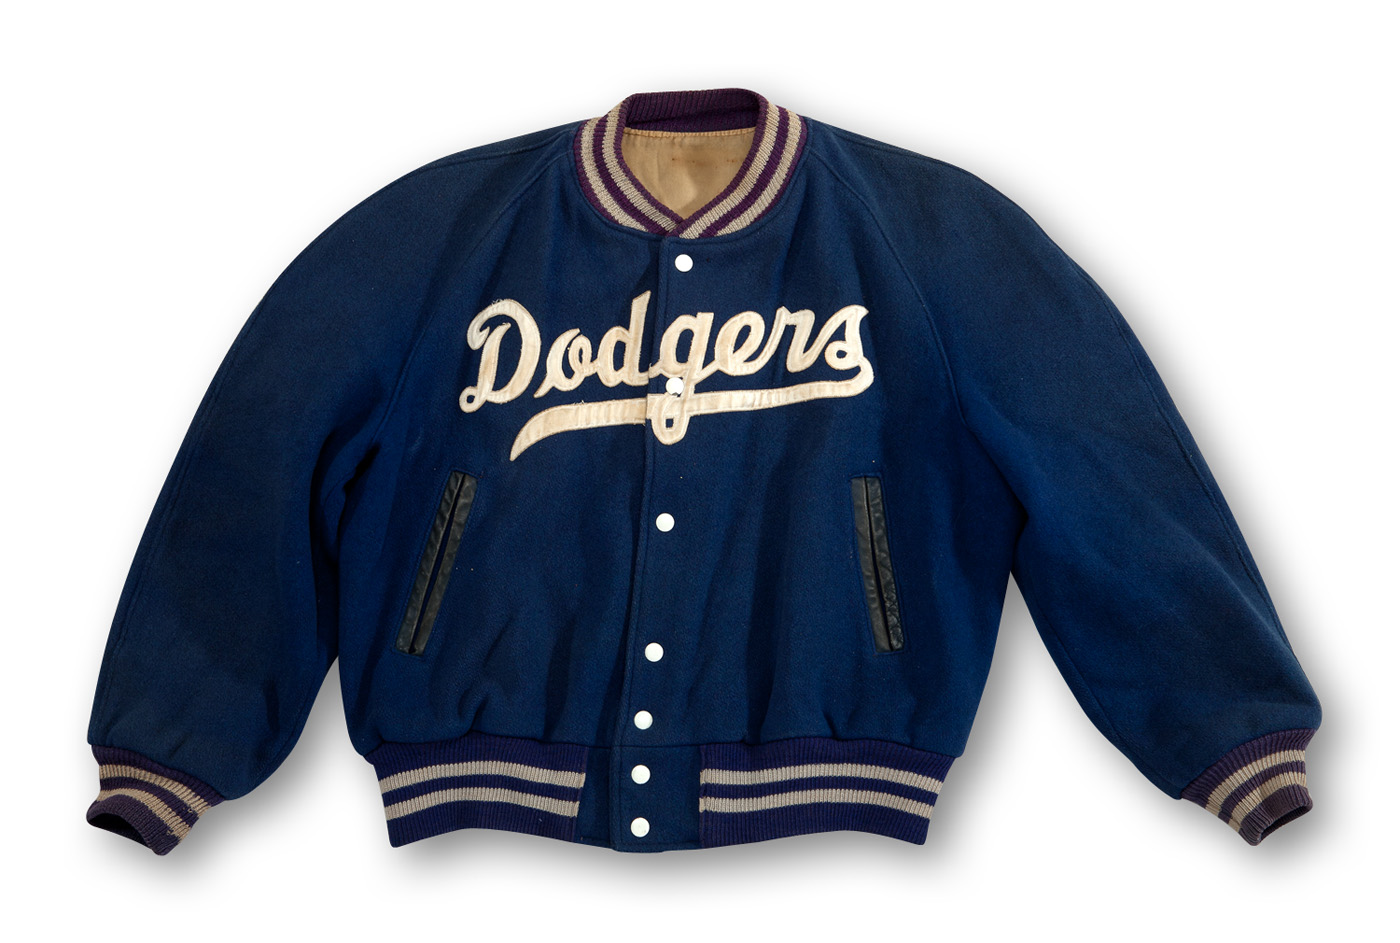 Dodgers Blue Heaven: Check Out this Vintage Dodger Pinstripes Uniform - 1933